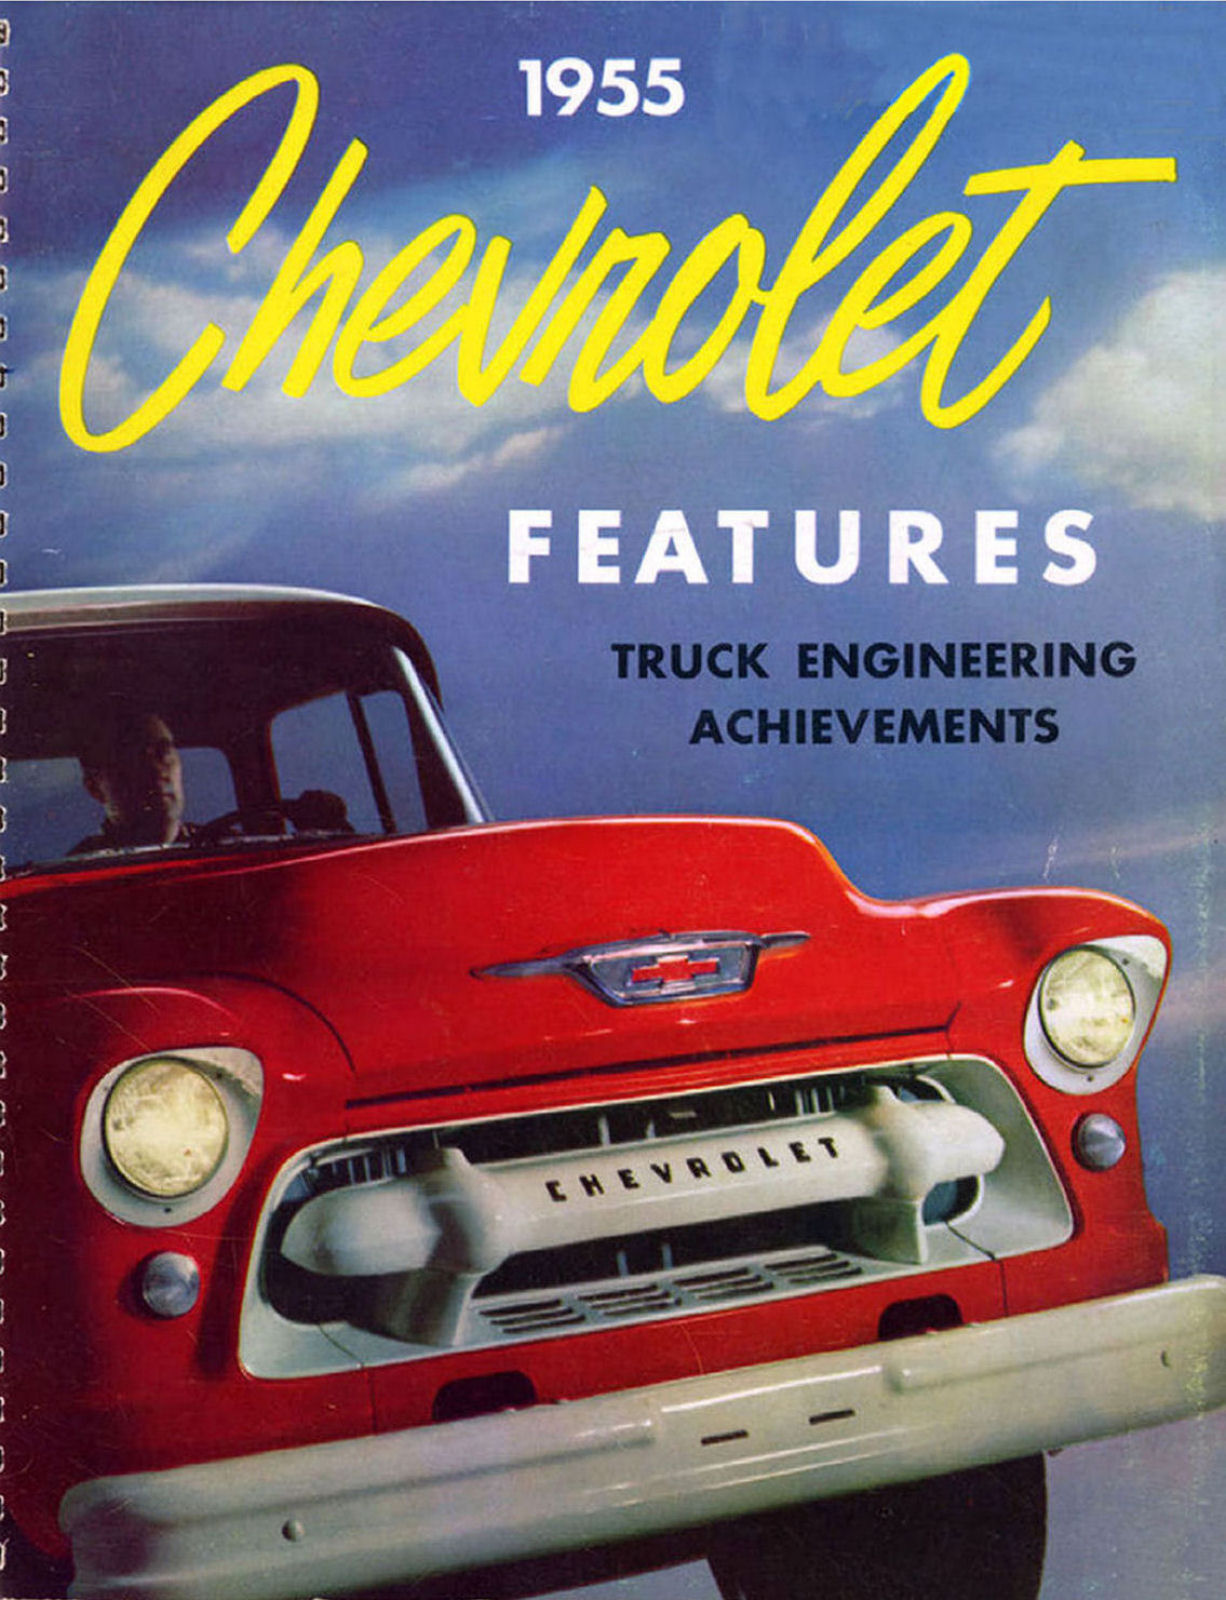 1955_Chevrolet_Truck_Engineering_Features-001